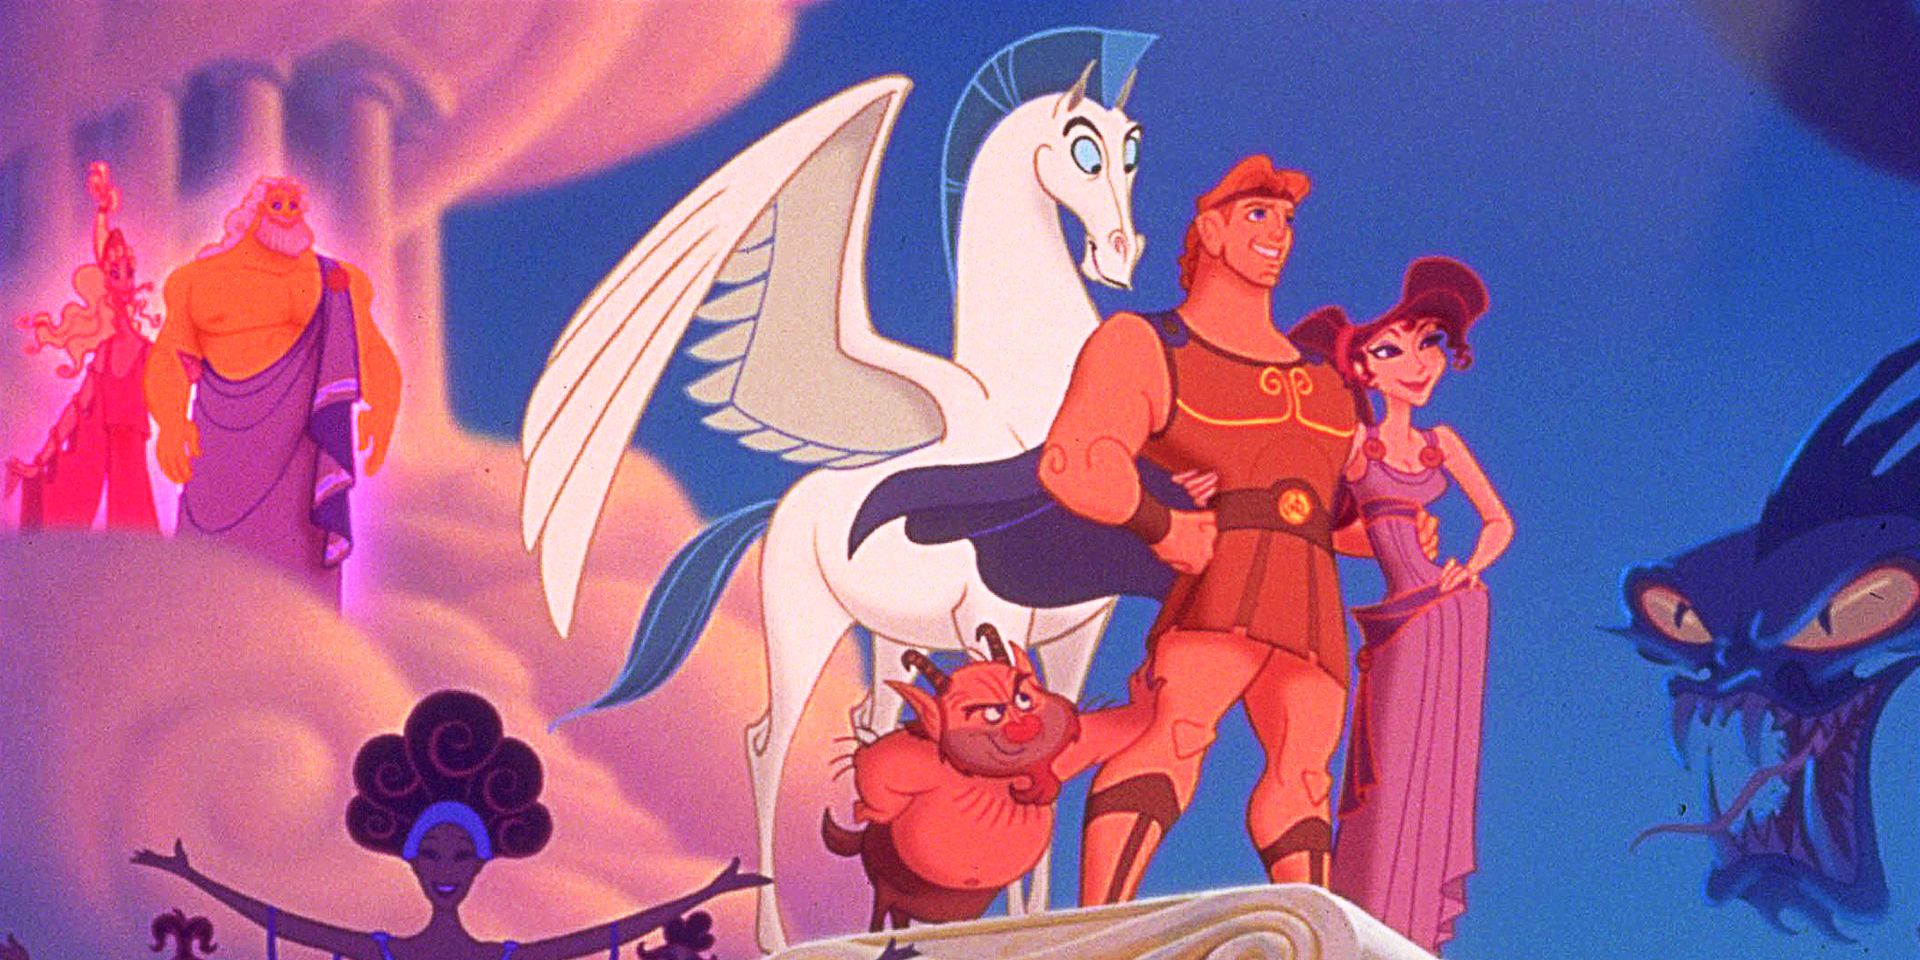 Hercules stands with Pegasus in Hercules